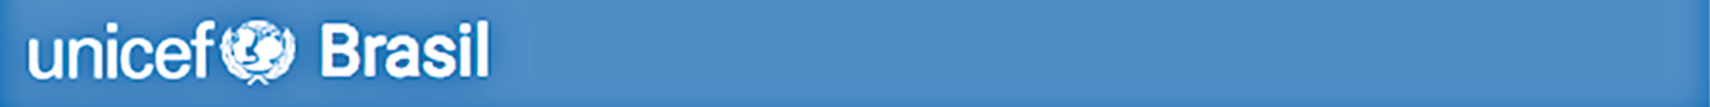 Esquema. Reprodução de página web. Acima, aba azul com o título da página: 'UNICEF BRASIL', com o símbolo da entidade. Abaixo, o texto: Declaração Universal dos Direitos Humanos Adotada e proclamada pela Assembleia Geral das Nações Unidas (resolução 217 A III) em 10 de dezembro 1948. Preâmbulo, ligado por um fio a uma caixa com o texto: Preâmbulo: aborda o objeto da norma (do que trata) e do âmbito da aplicação das regras (para quem e onde se aplicam). Considerando que o reconhecimento da dignidade inerente a todos os membros da família humana e de seus direitos iguais e inalienáveis é o fundamento da liberdade, da justiça e da paz no mundo, Considerando que o desprezo e o desrespeito pelos direitos humanos resultaram em atos bárbaros que ultrajaram a consciência da humanidade e que o advento de um mundo em que mulheres e homens gozem de liberdade de palavra, de crença e da liberdade de viverem a salvo do temor e da necessidade foi proclamado como a mais alta aspiração do ser humano comum, Considerando ser essencial que os direitos humanos sejam protegidos pelo império da lei, para que o ser humano não seja compelido, como último recurso, à rebelião contra a tirania e a opressão, Considerando ser essencial promover o desenvolvimento de relações amistosas entre as nações, Considerando que os povos das Nações Unidas reafirmaram, na Carta, sua fé nos direitos fundamentais do ser humano, na dignidade e no valor da pessoa humana e na igualdade de direitos do homem e da mulher e que decidiram promover o progresso social e melhores condições de vida em uma liberdade mais ampla, Considerando que os Países-Membros se comprometeram a promover, em cooperação com as Nações Unidas, o respeito universal aos direitos e liberdades fundamentais do ser humano e a observância desses direitos e liberdades, Considerando que uma compreensão comum desses direitos e liberdades é da mais alta importância para o pleno cumprimento desse compromisso, Agora portanto a Assembleia Geral proclama a presente Declaração Universal dos Direitos Humanos como o ideal comum a ser atingido por todos os povos e todas as nações, com o objetivo de que cada indivíduo e cada órgão da sociedade tendo sempre em mente esta Declaração, esforce-se, por meio do ensino e da educação, por promover o respeito a esses direitos e liberdades, e, pela adoção de medidas progressivas de caráter nacional e internacional, por assegurar o seu reconhecimento e a sua observância universais e efetivos, tanto entre os povos dos próprios Países-Membros quanto entre os povos dos territórios sob sua jurisdição. Artigo 1. Ligado por um fio a uma caixa com o texto: Artigo: é a unidade básica da Declaração, tratando de um único conteúdo. Pode se desdobrar em parágrafos, incisos, alíneas e itens. Todos os seres humanos nascem livres e iguais em dignidade e direitos. São dotados de razão e consciência e devem agir em relação uns aos outros com espírito de fraternidade. Artigo 2 1. Todo ser humano tem capacidade para gozar os direitos e as liberdades estabelecidos nesta Declaração, sem distinção de qualquer espécie, seja de raça, cor, sexo, língua, religião, opinião política ou de outra natureza, origem nacional ou social, riqueza, nascimento, ou qualquer outra condição. 2. Não será também feita nenhuma distinção fundada na condição política, jurídica ou internacional do país ou território a que pertença uma pessoa, quer se trate de um território independente, sob tutela, sem governo próprio, quer sujeito a qualquer outra limitação de soberania. Ligado por um fio a uma caixa com o texto Parágrafo: é a subdivisão do artigo, trazendo uma disposição complementar.